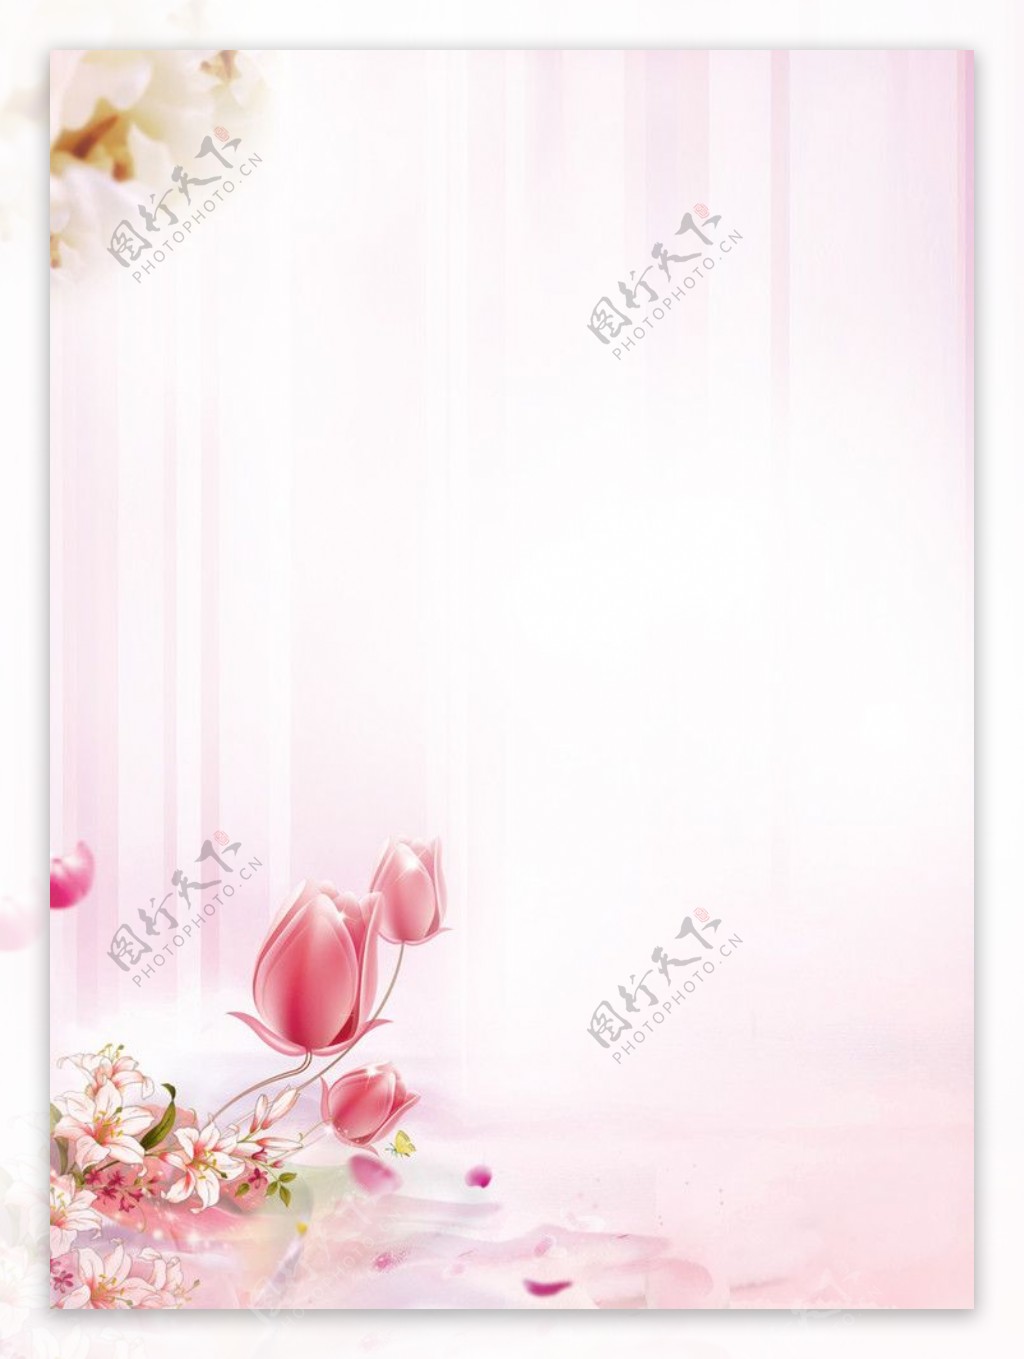 粉色温馨女性美容院活动背景图图片